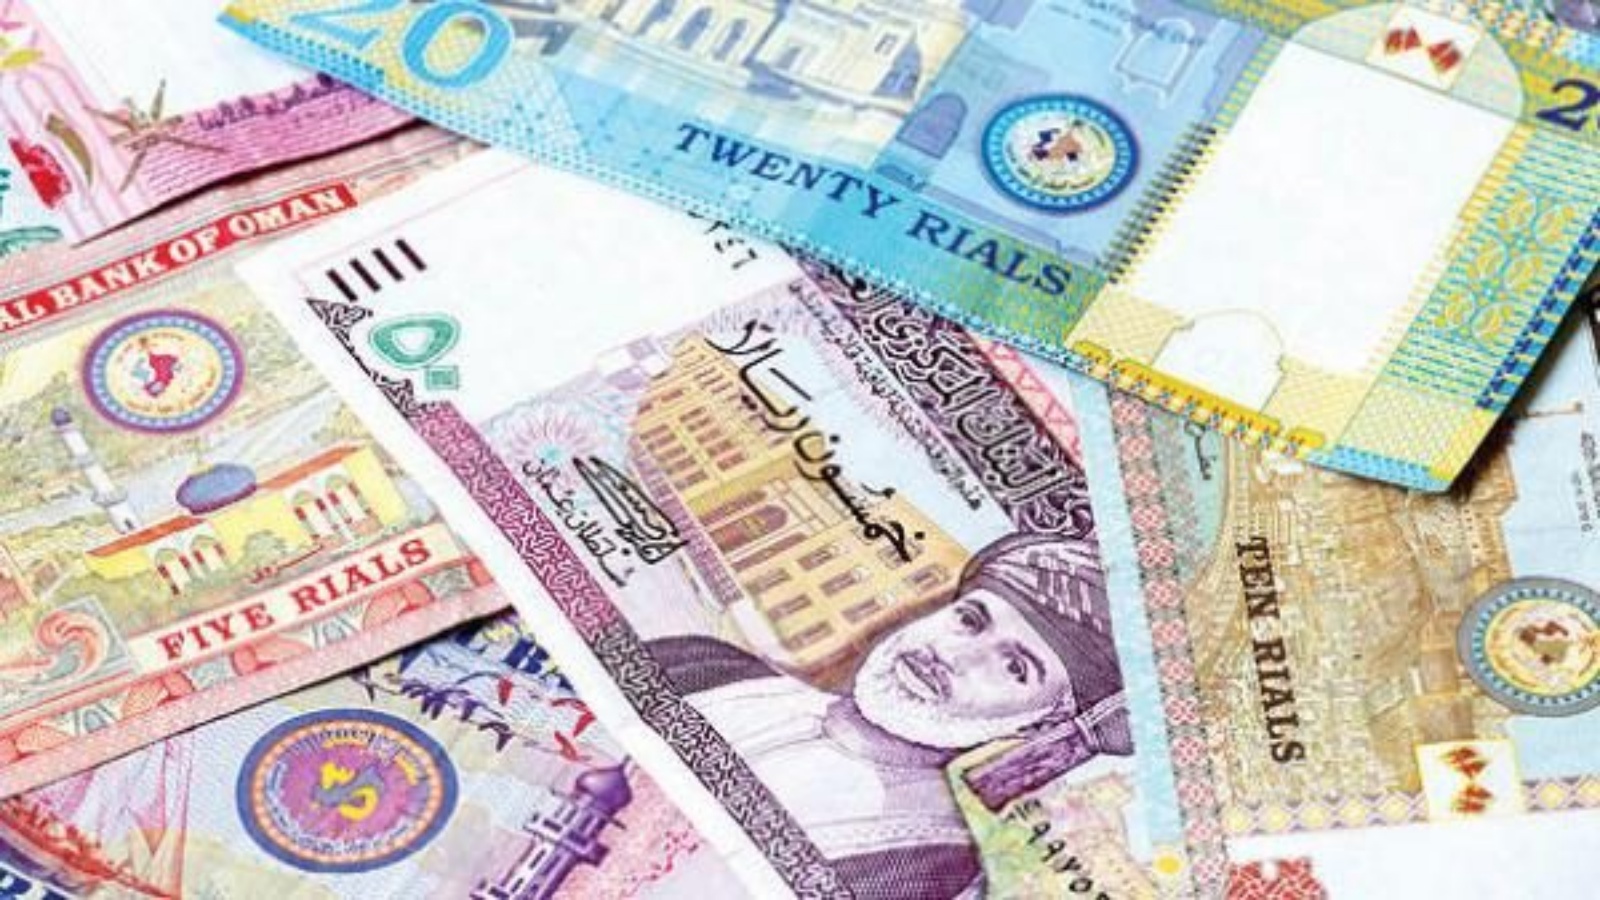 ميزانية سلطنة عمان للعام 2021 تلحظ عجزا بقيمة 5,7 مليارات دولار